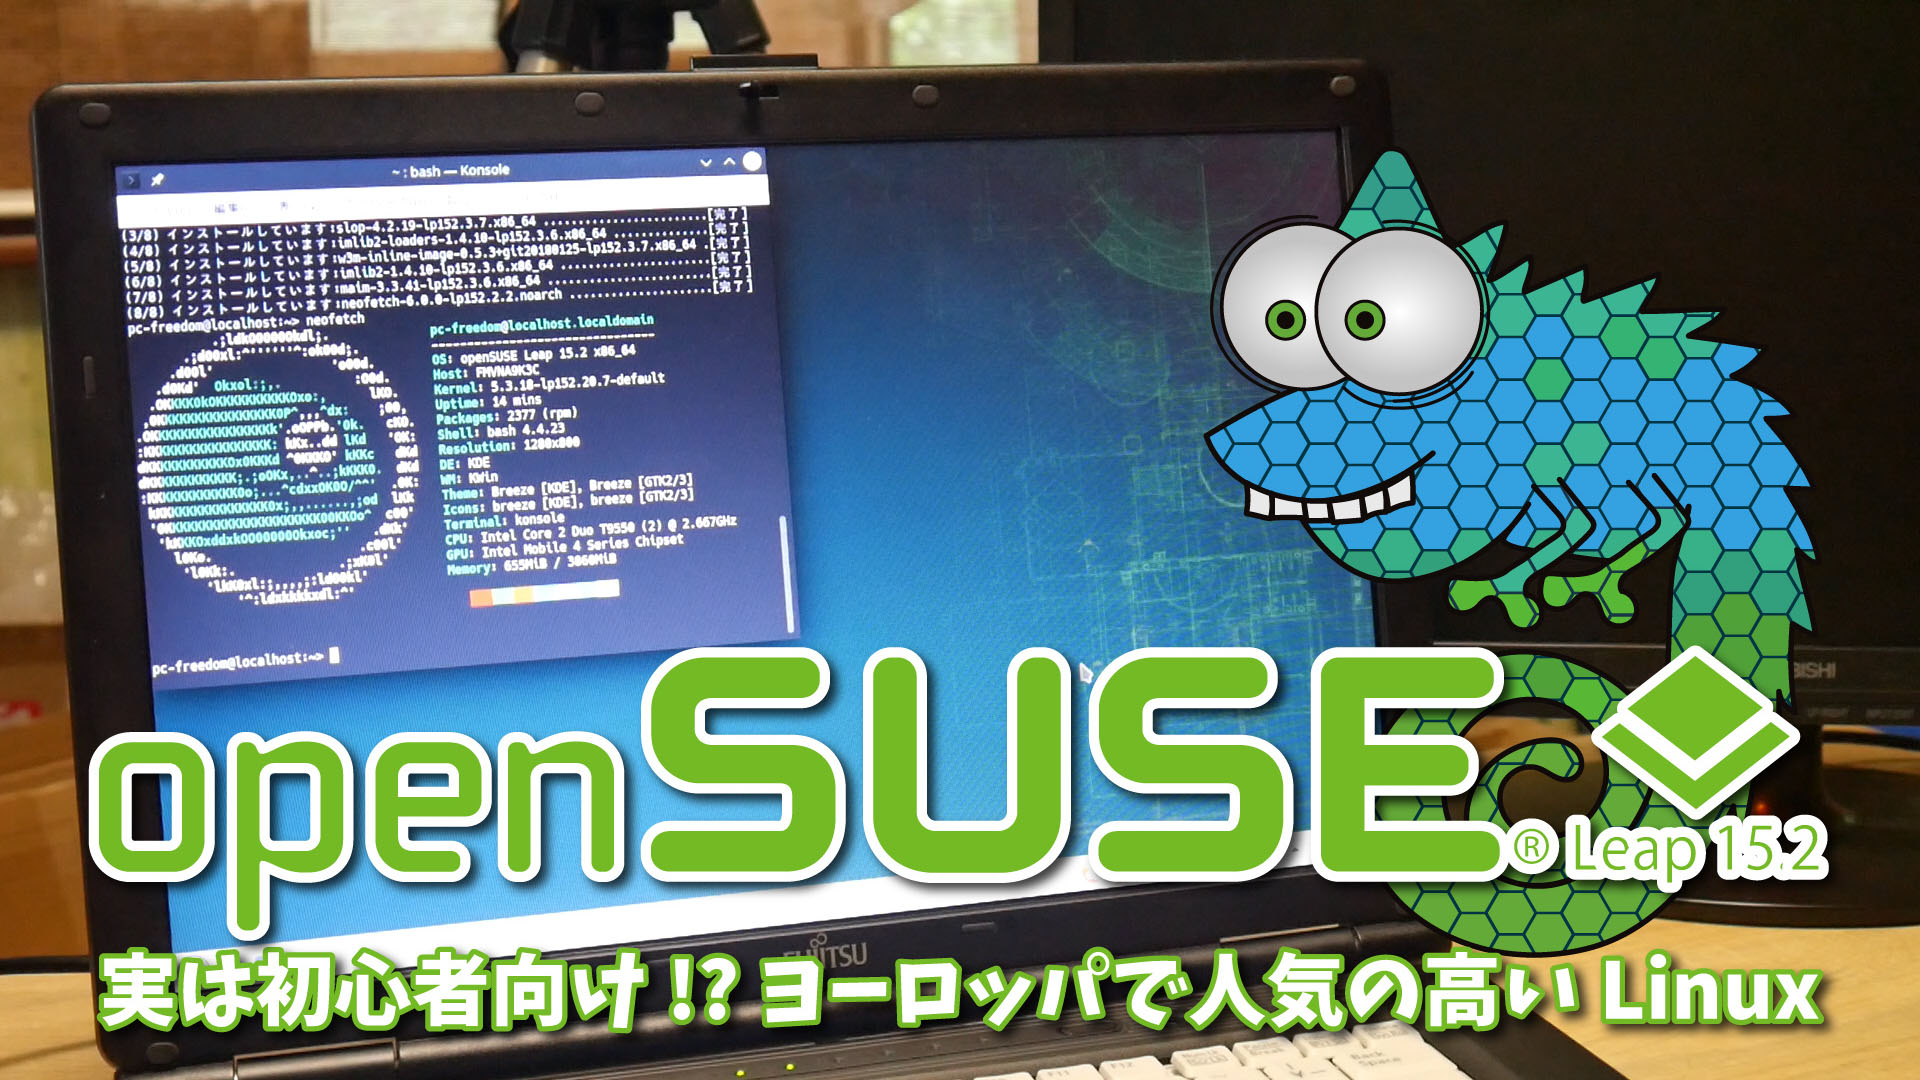 openSUSE Leap 15.2: 実は初心者向け!?ヨーロッパで人気の高い高品質 Linux ディストリビューション。